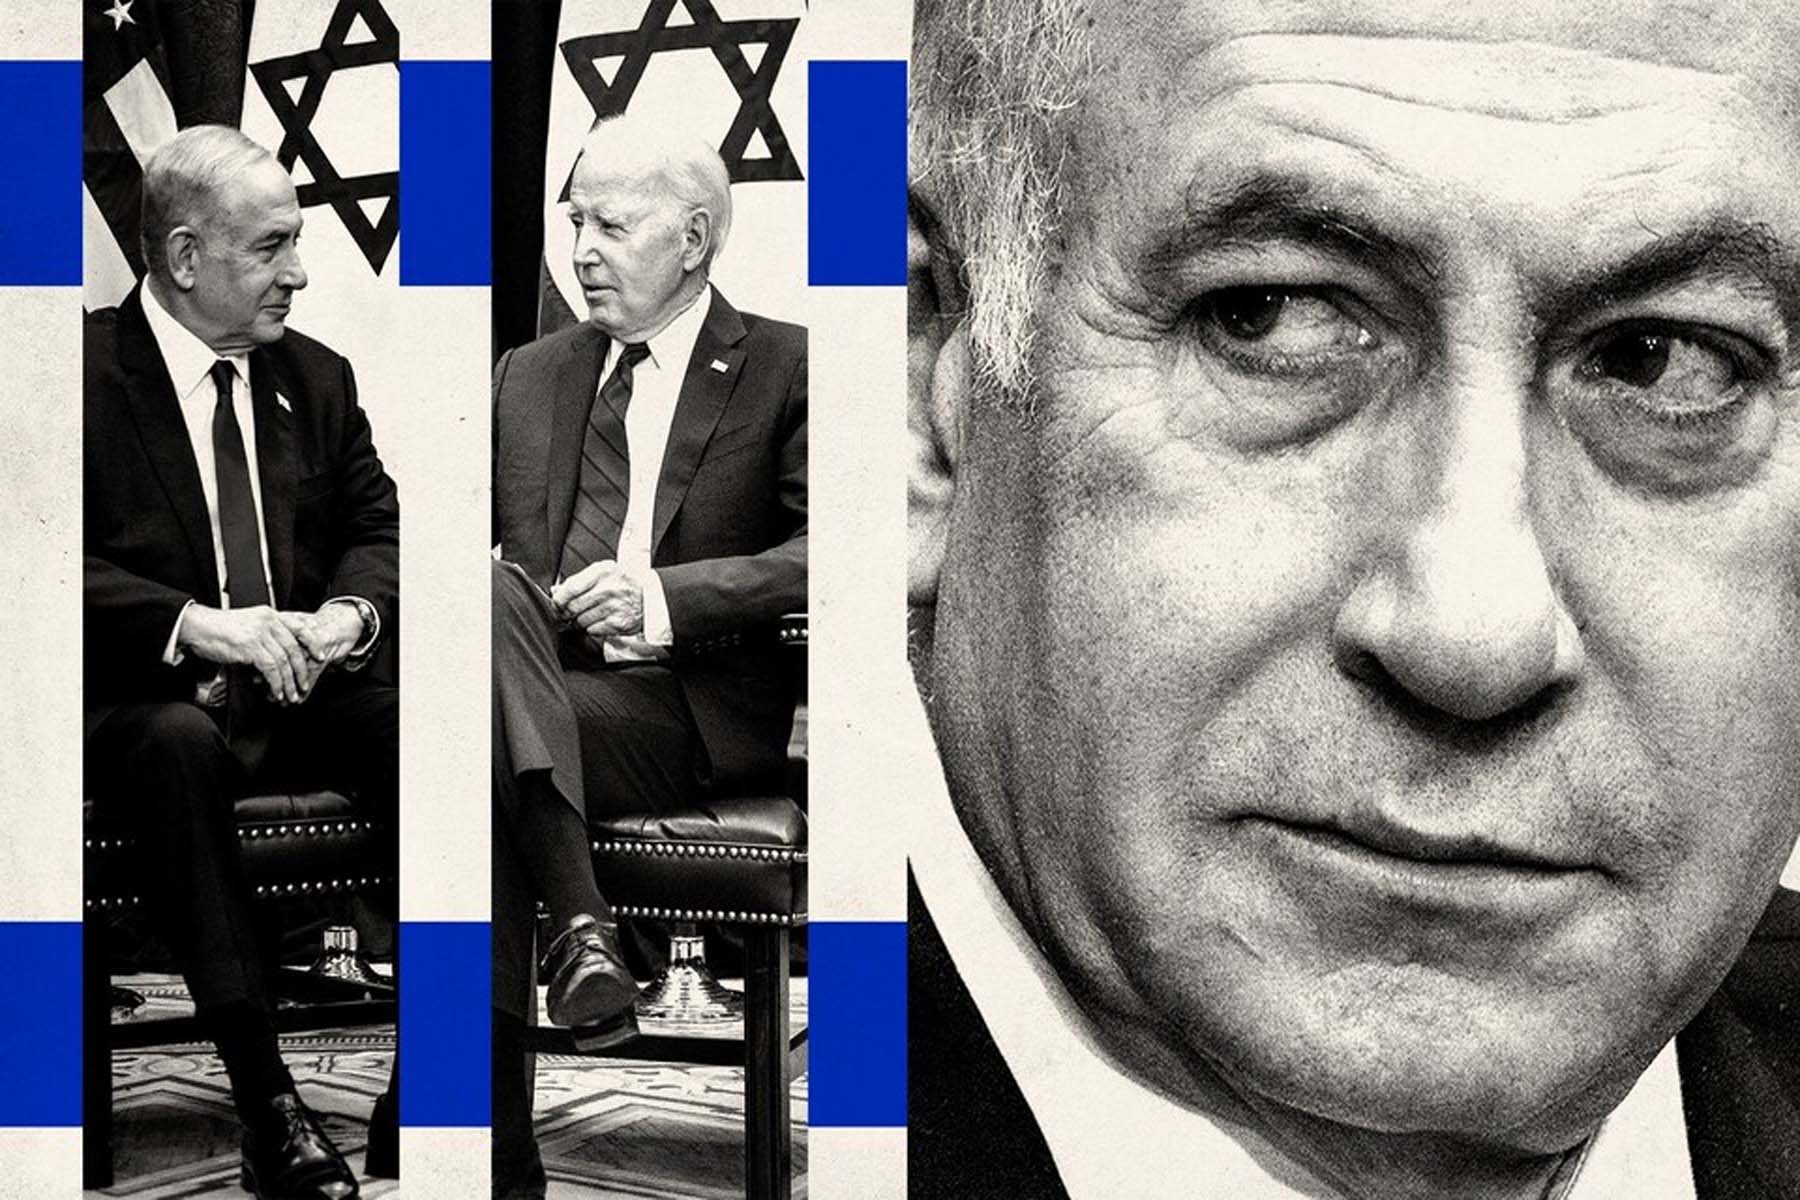 بایدن می خواهد نتانیاهو را به عنوان دولتمرد در محور ضد جمهوری اسلامی معرفی کند